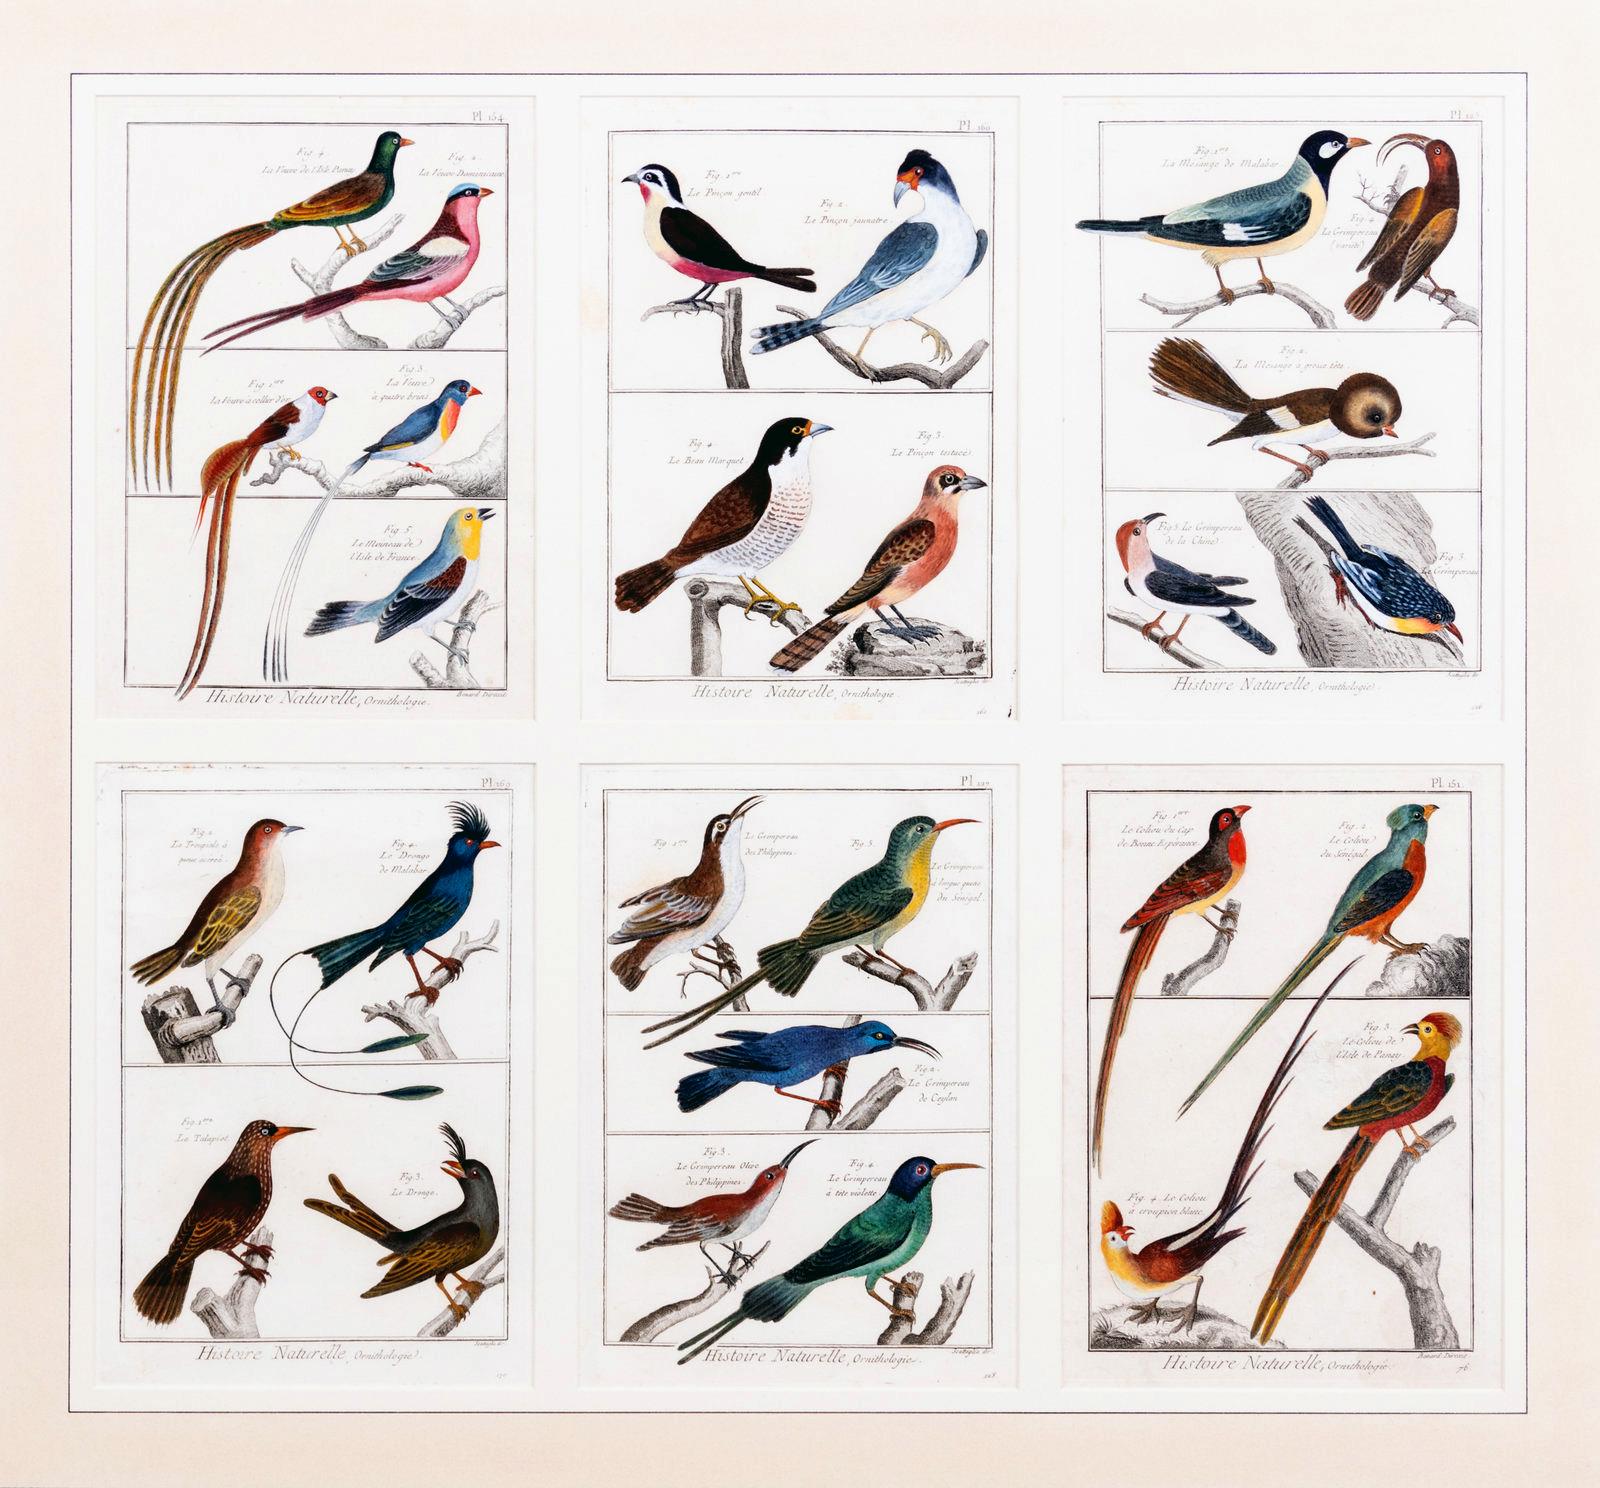 Grand tableau contenant six gravures différentes de groupements d'oiseaux,
Histoire Naturelle, Ornithologie par Georges-Louis Leclerc, Comte de Buffon,
Circa 1770-83

Le grand tableau contient six gravures différentes d'un groupe d'oiseaux provenant